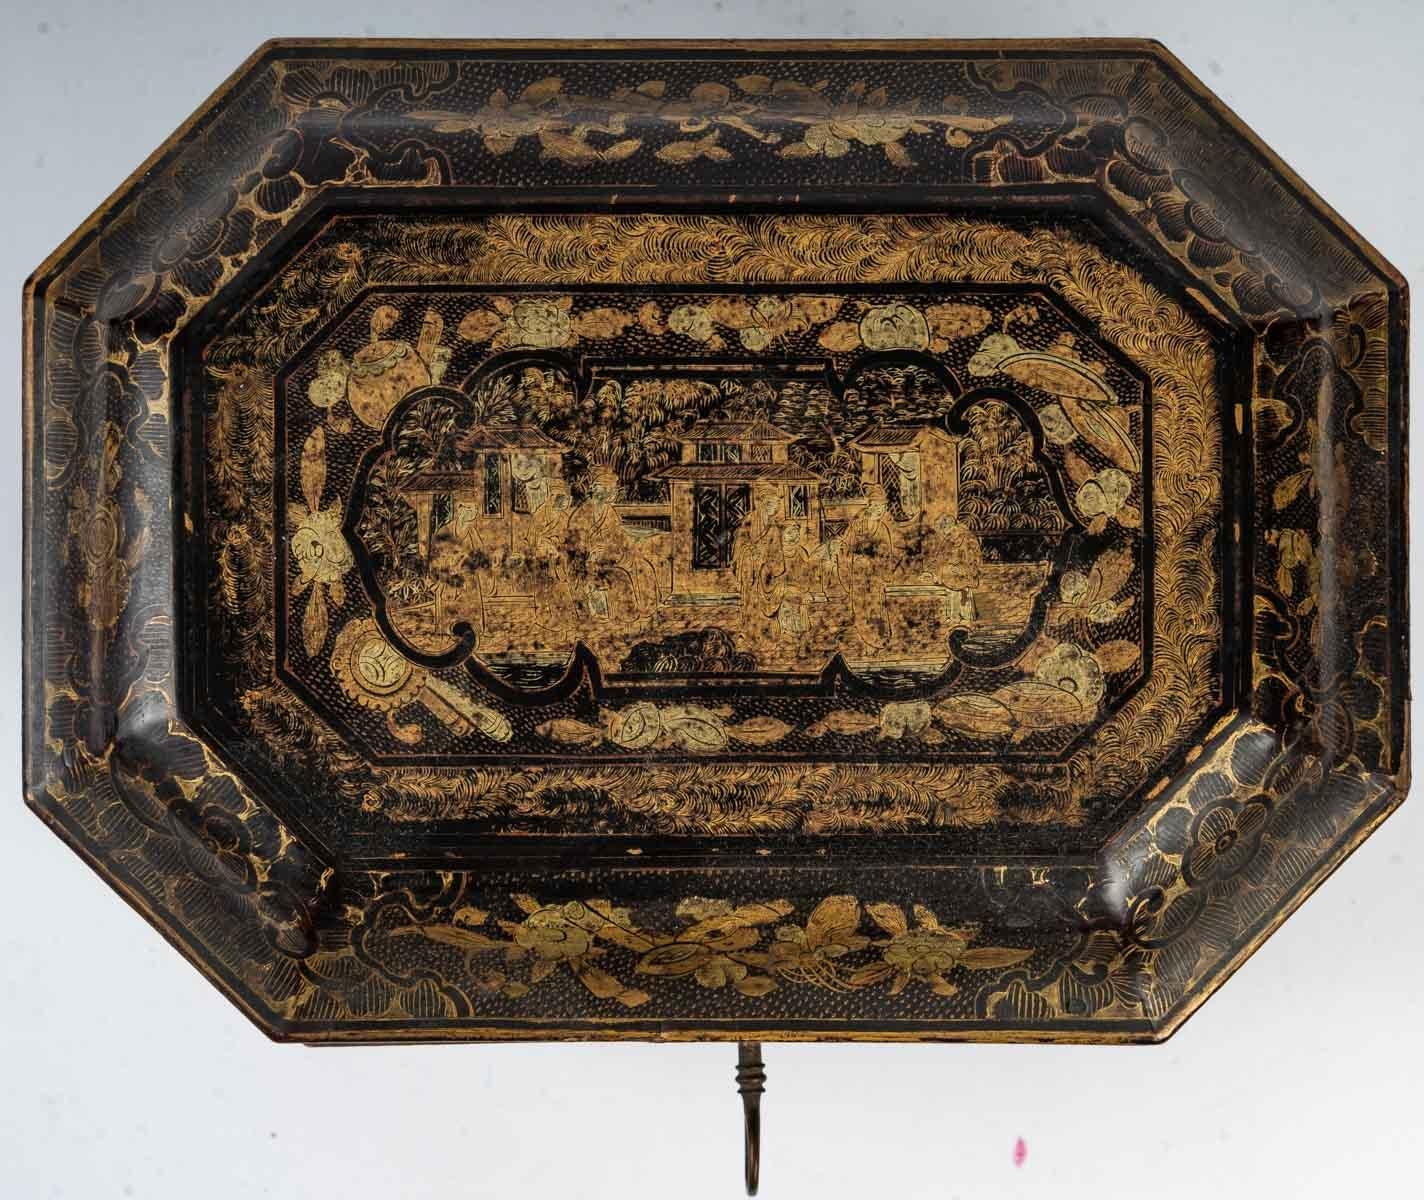 Tea box, 19th century, China
Measures: H: 15 cm, W: 23 cm, D: 17 cm.